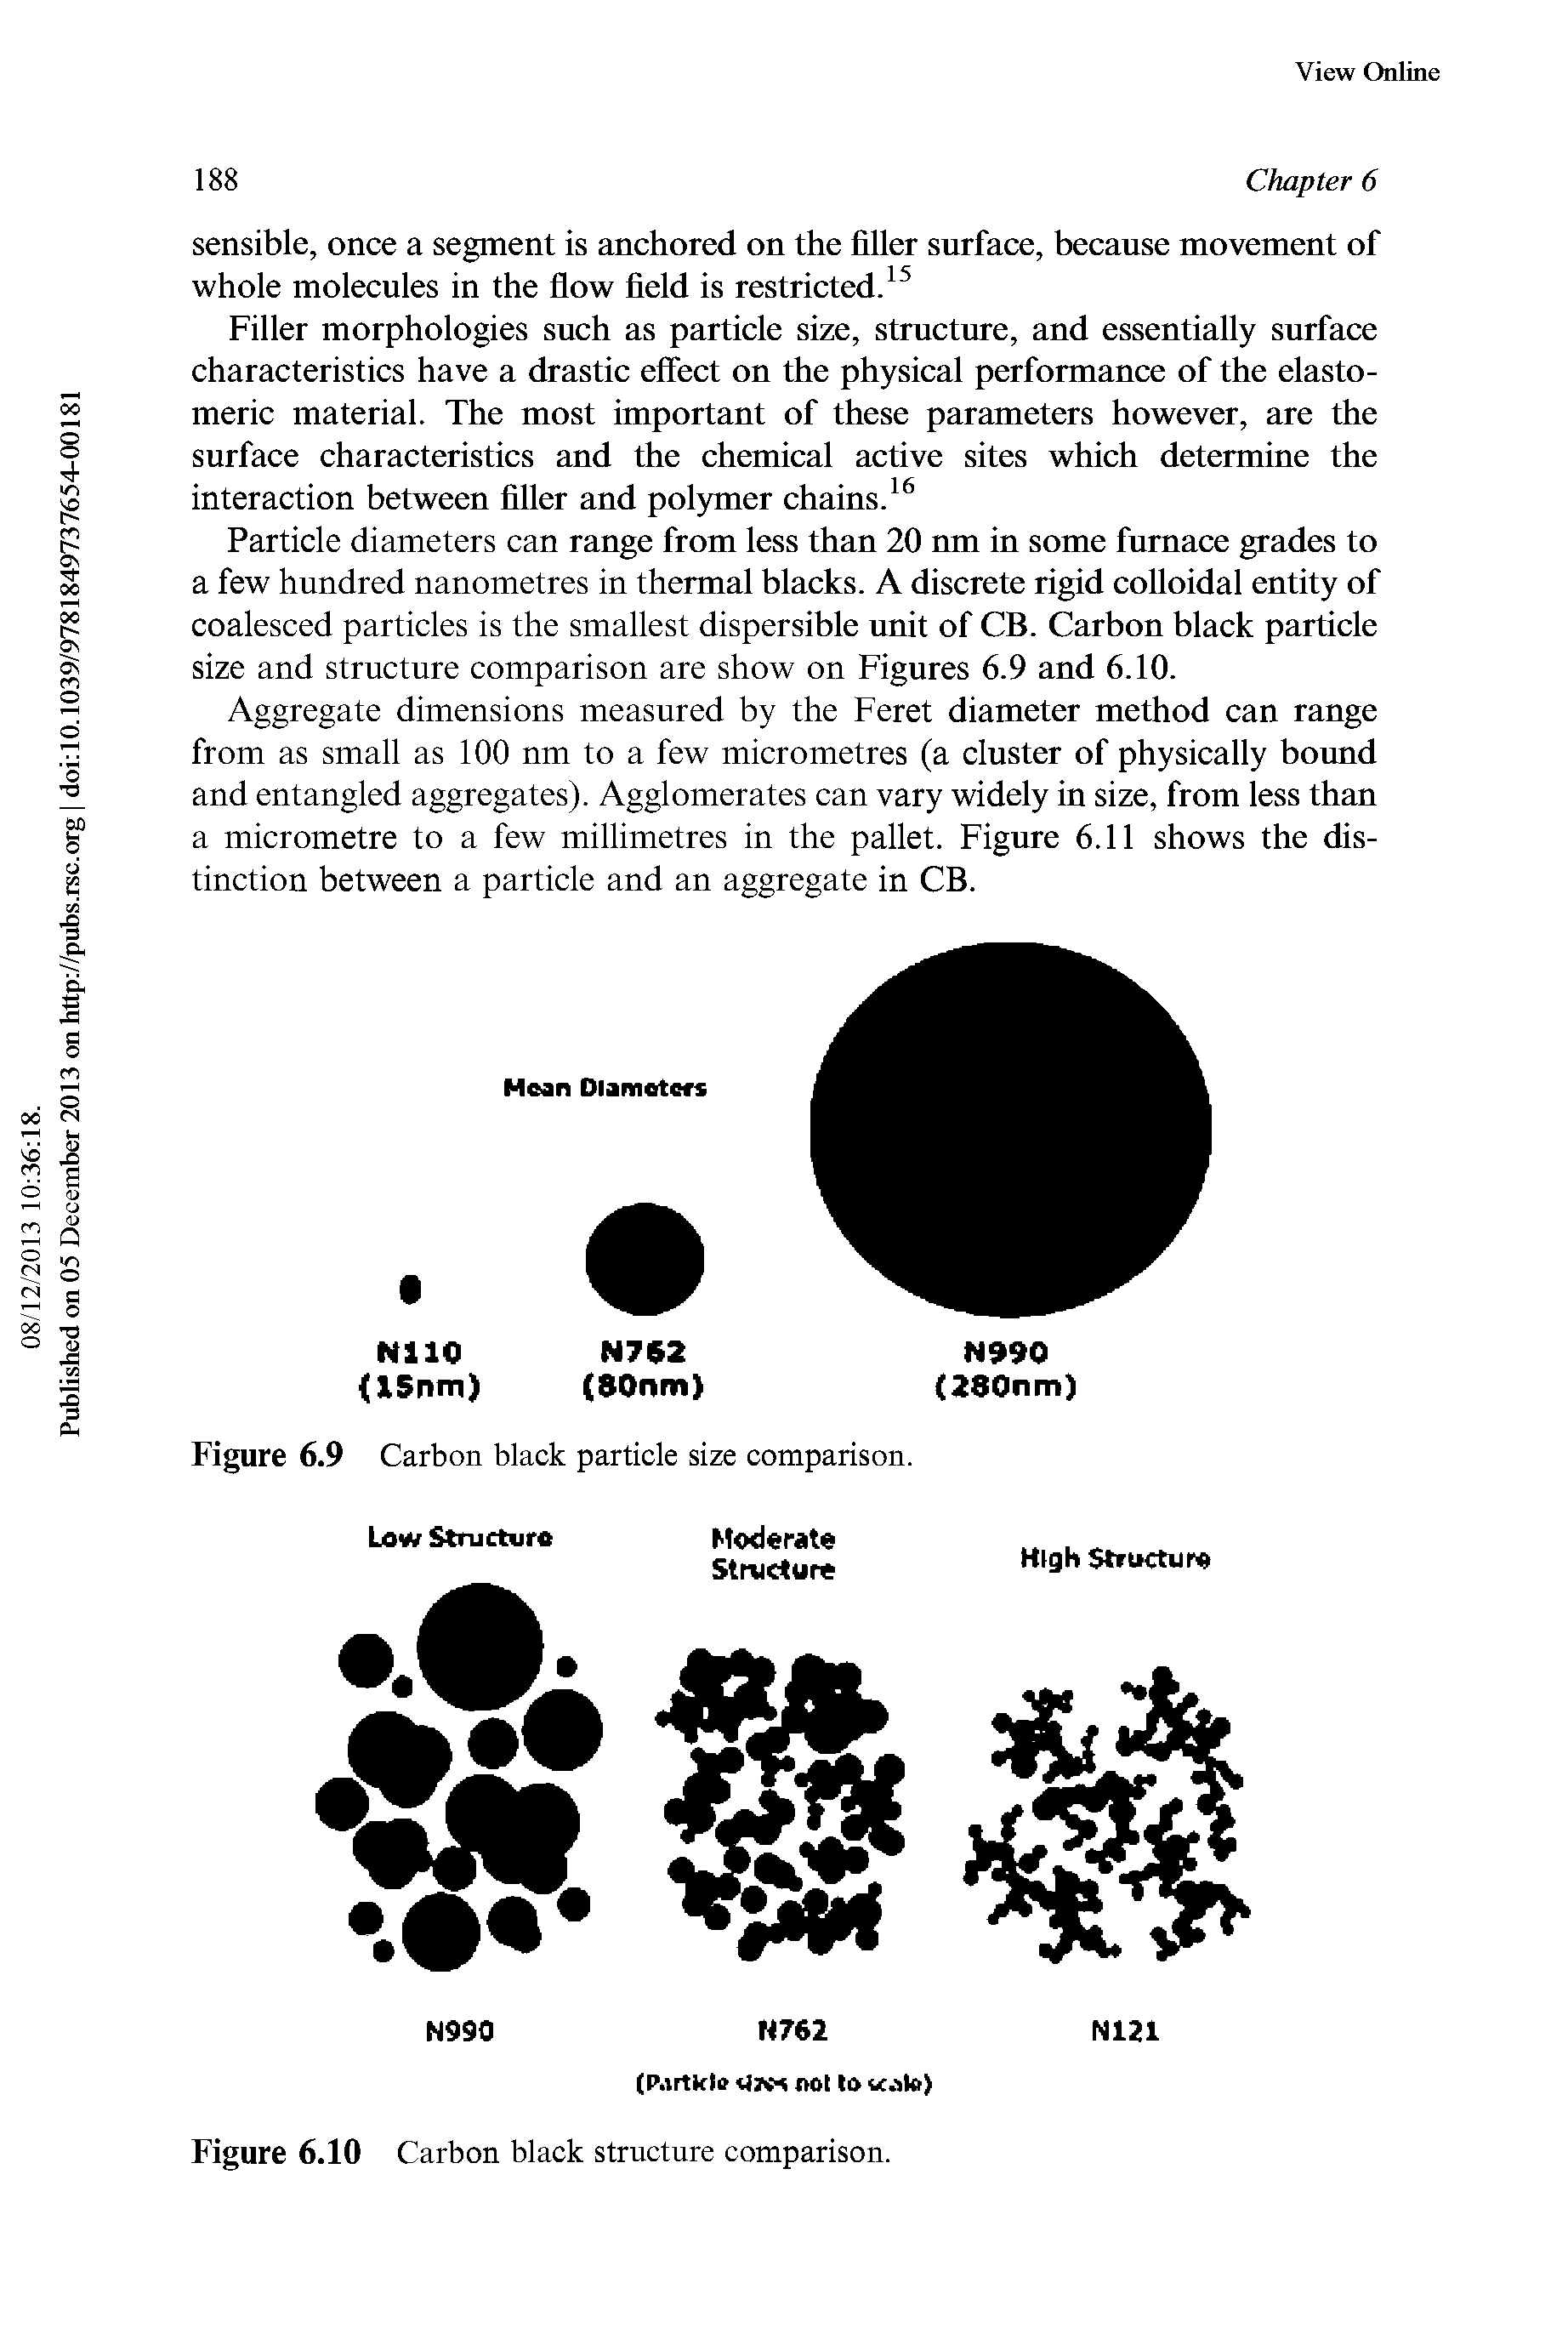 Figure 6.9 Carbon black particle size comparison.